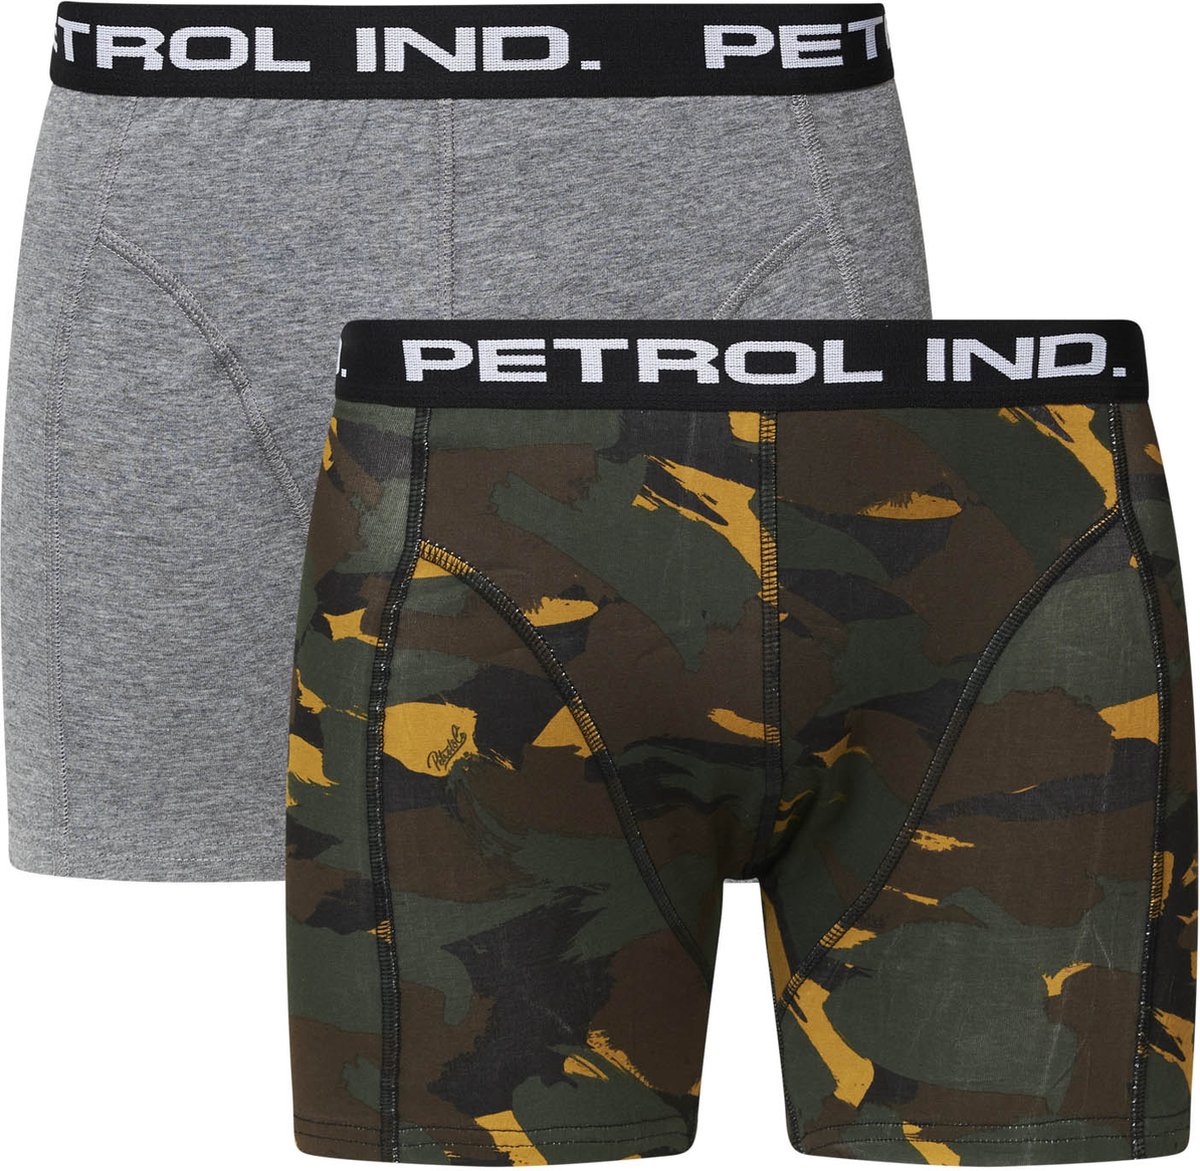 Petrol Onderbroek - Petrol Industries - 2-pack Boxershorts - Grijs - Camouflage Print Top Merken Winkel